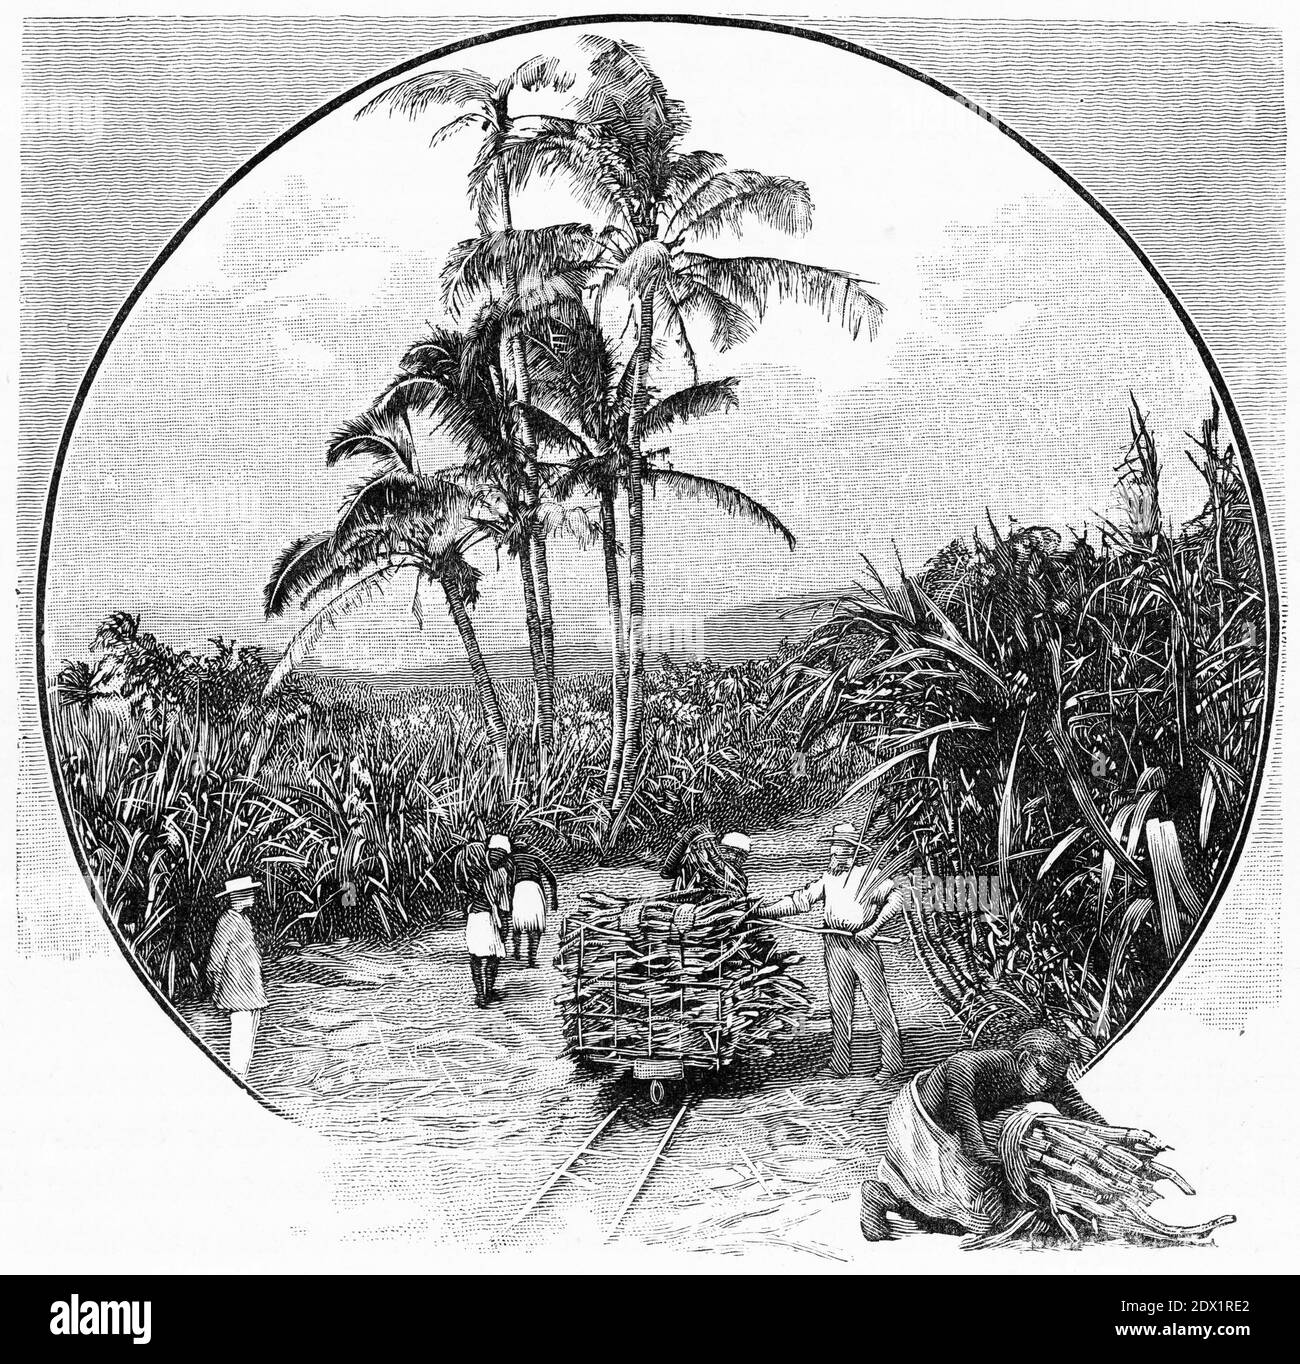 Gravure d'une plantation de canne à sucre aux Fidji, vers 1890 Banque D'Images